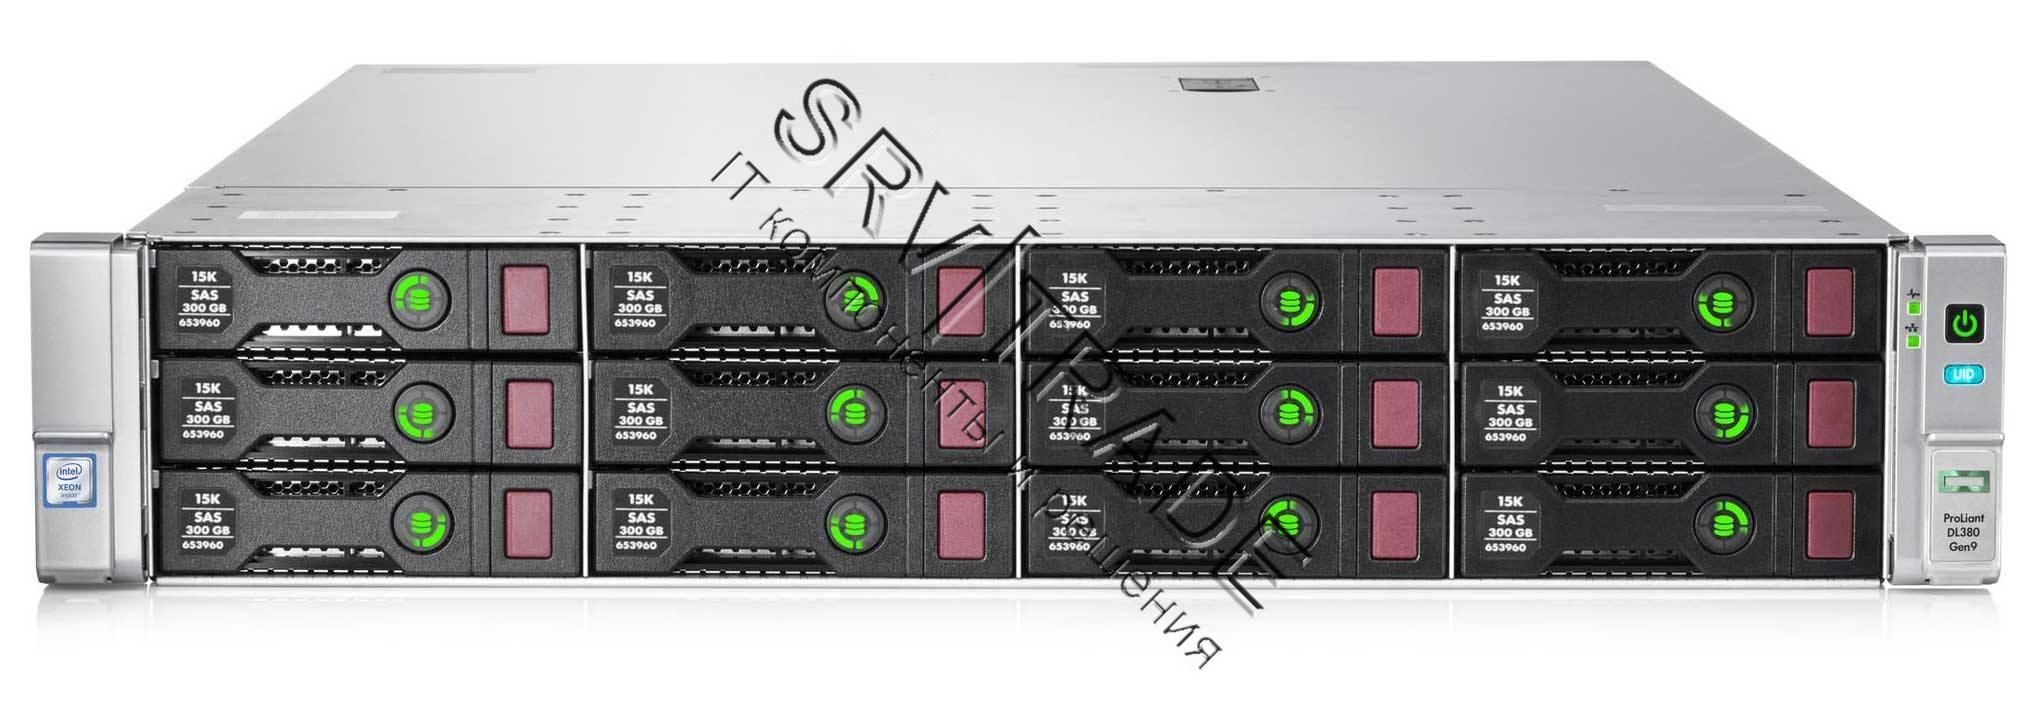 Сервер P07598-B21 Proliant DL385 Gen10 Plus 7402 Rack(2U)/2xEPYC24C 2.8GHz(128MB)/PerfHS/2x16GbR1D_3